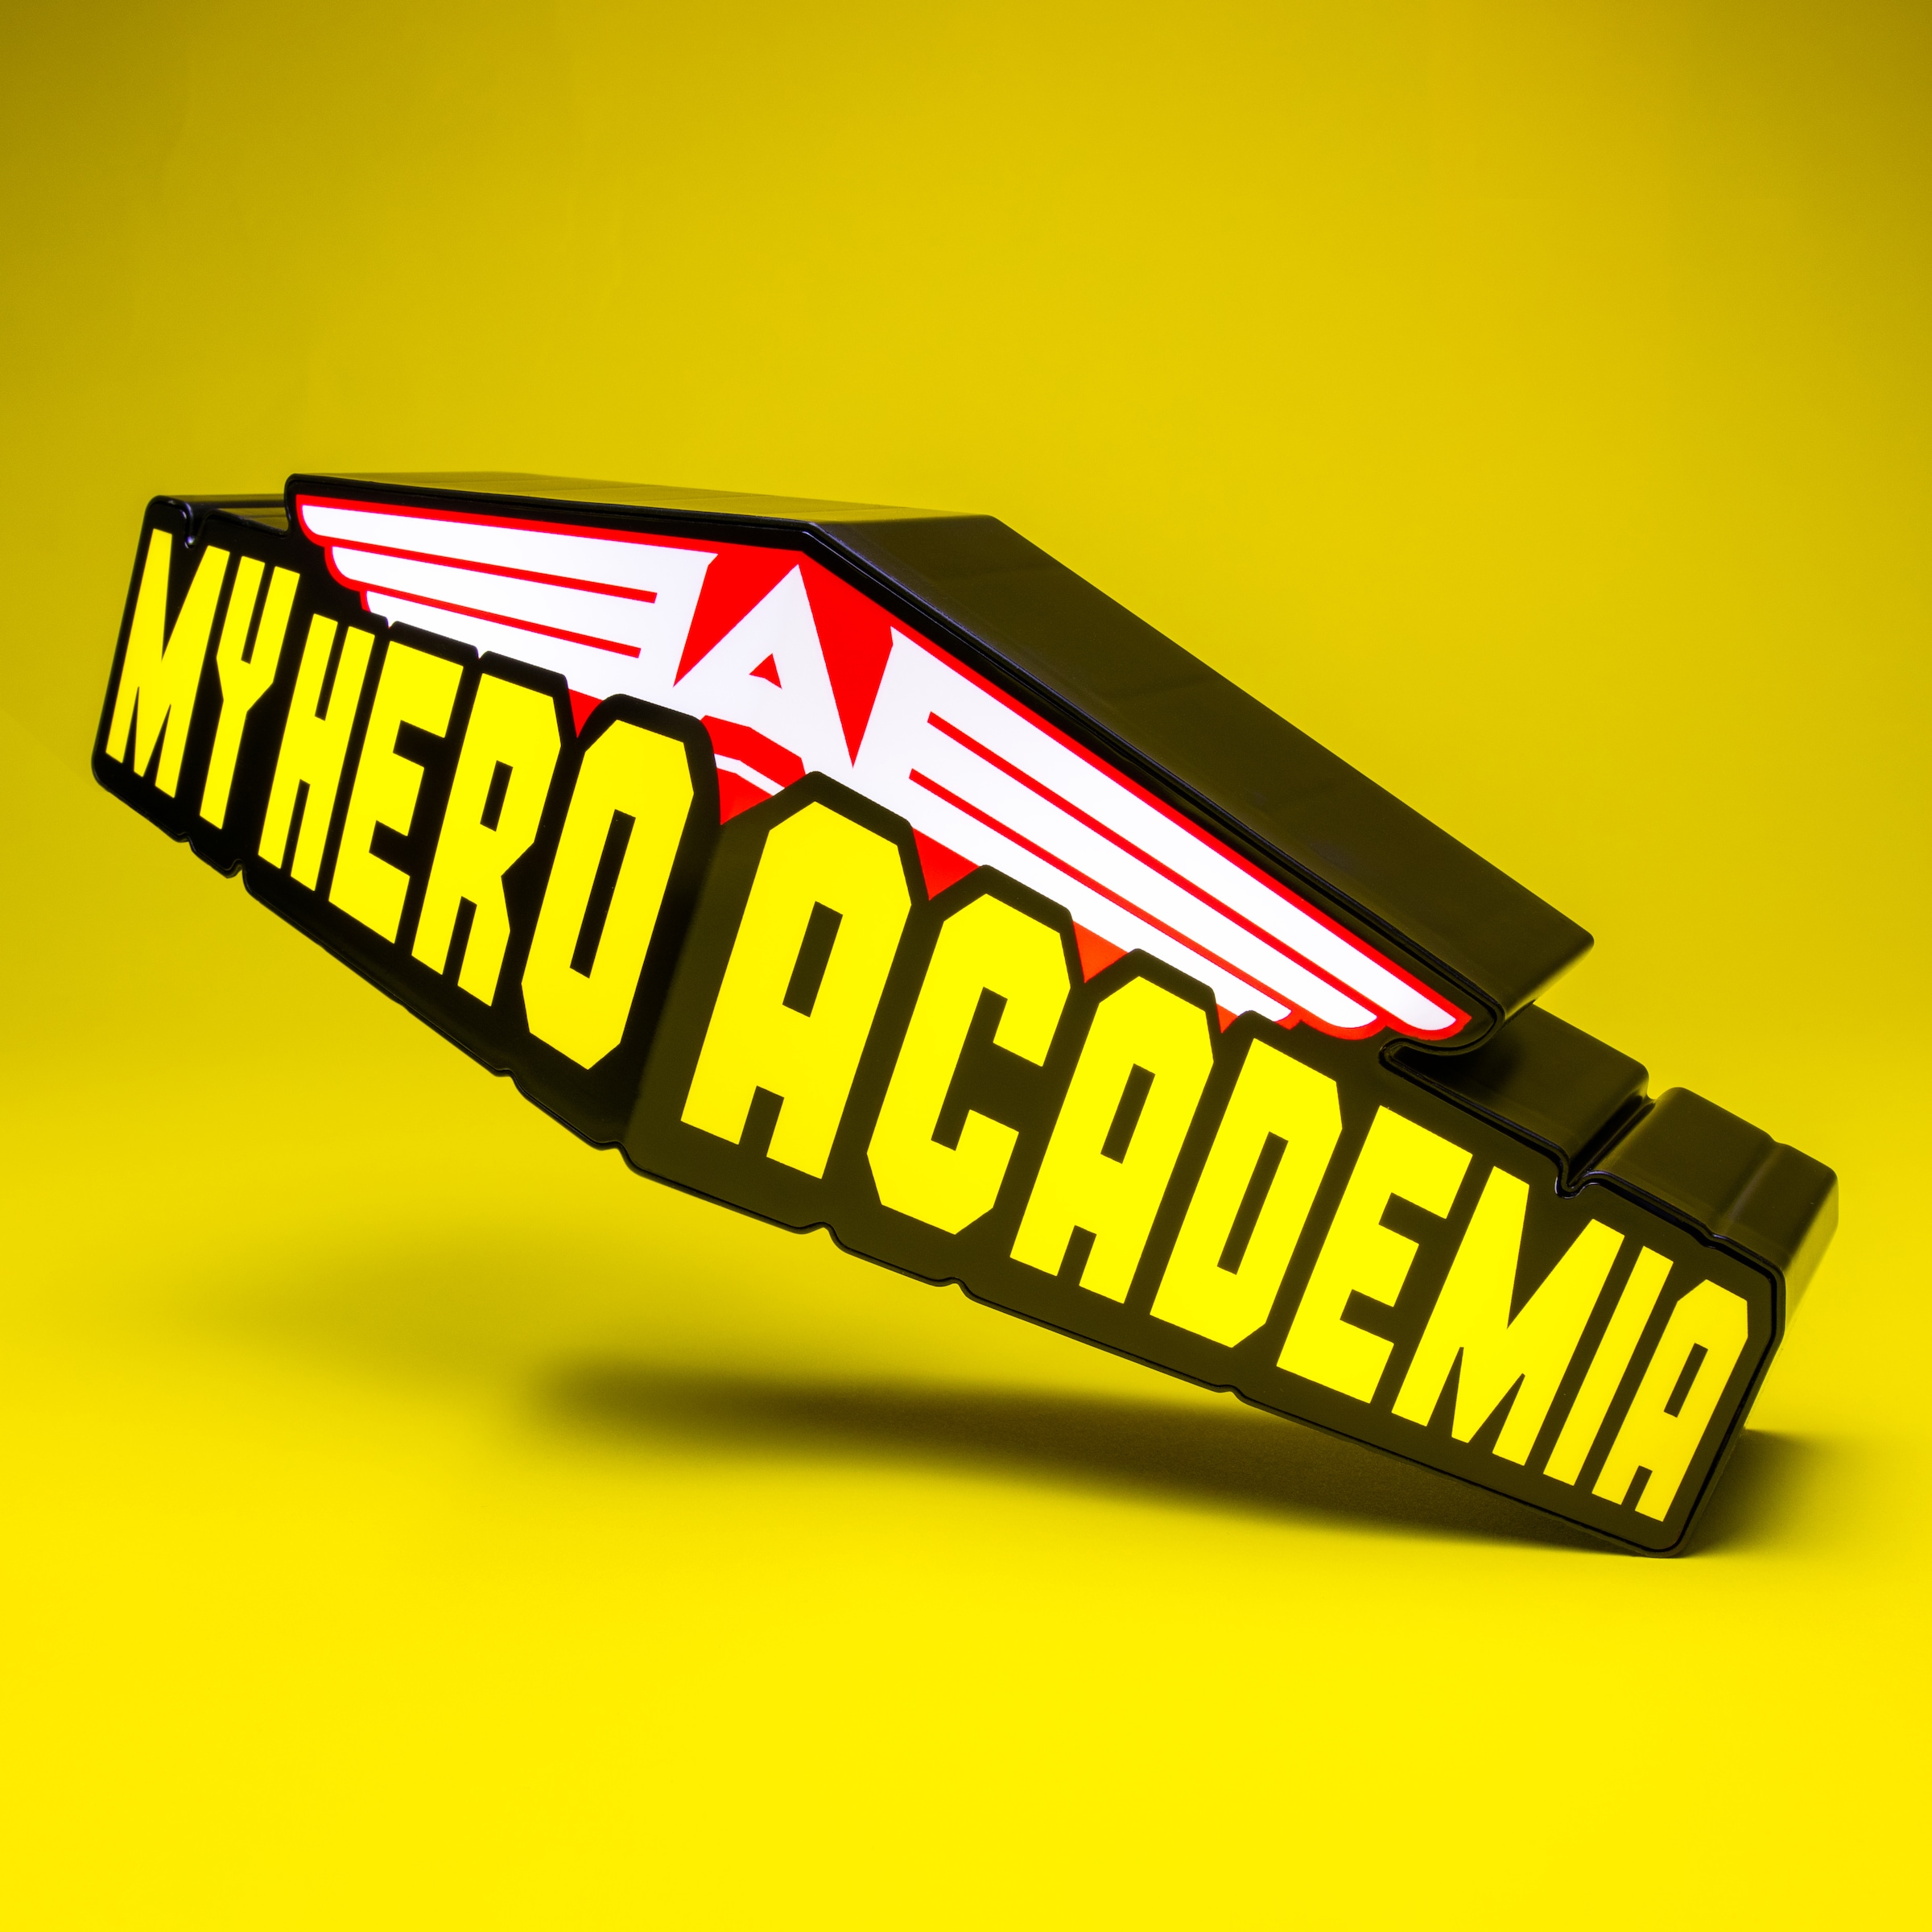 Paladone LED Dekolicht »My Hero Academia Logo Leuchte« online kaufen | mit  3 Jahren XXL Garantie